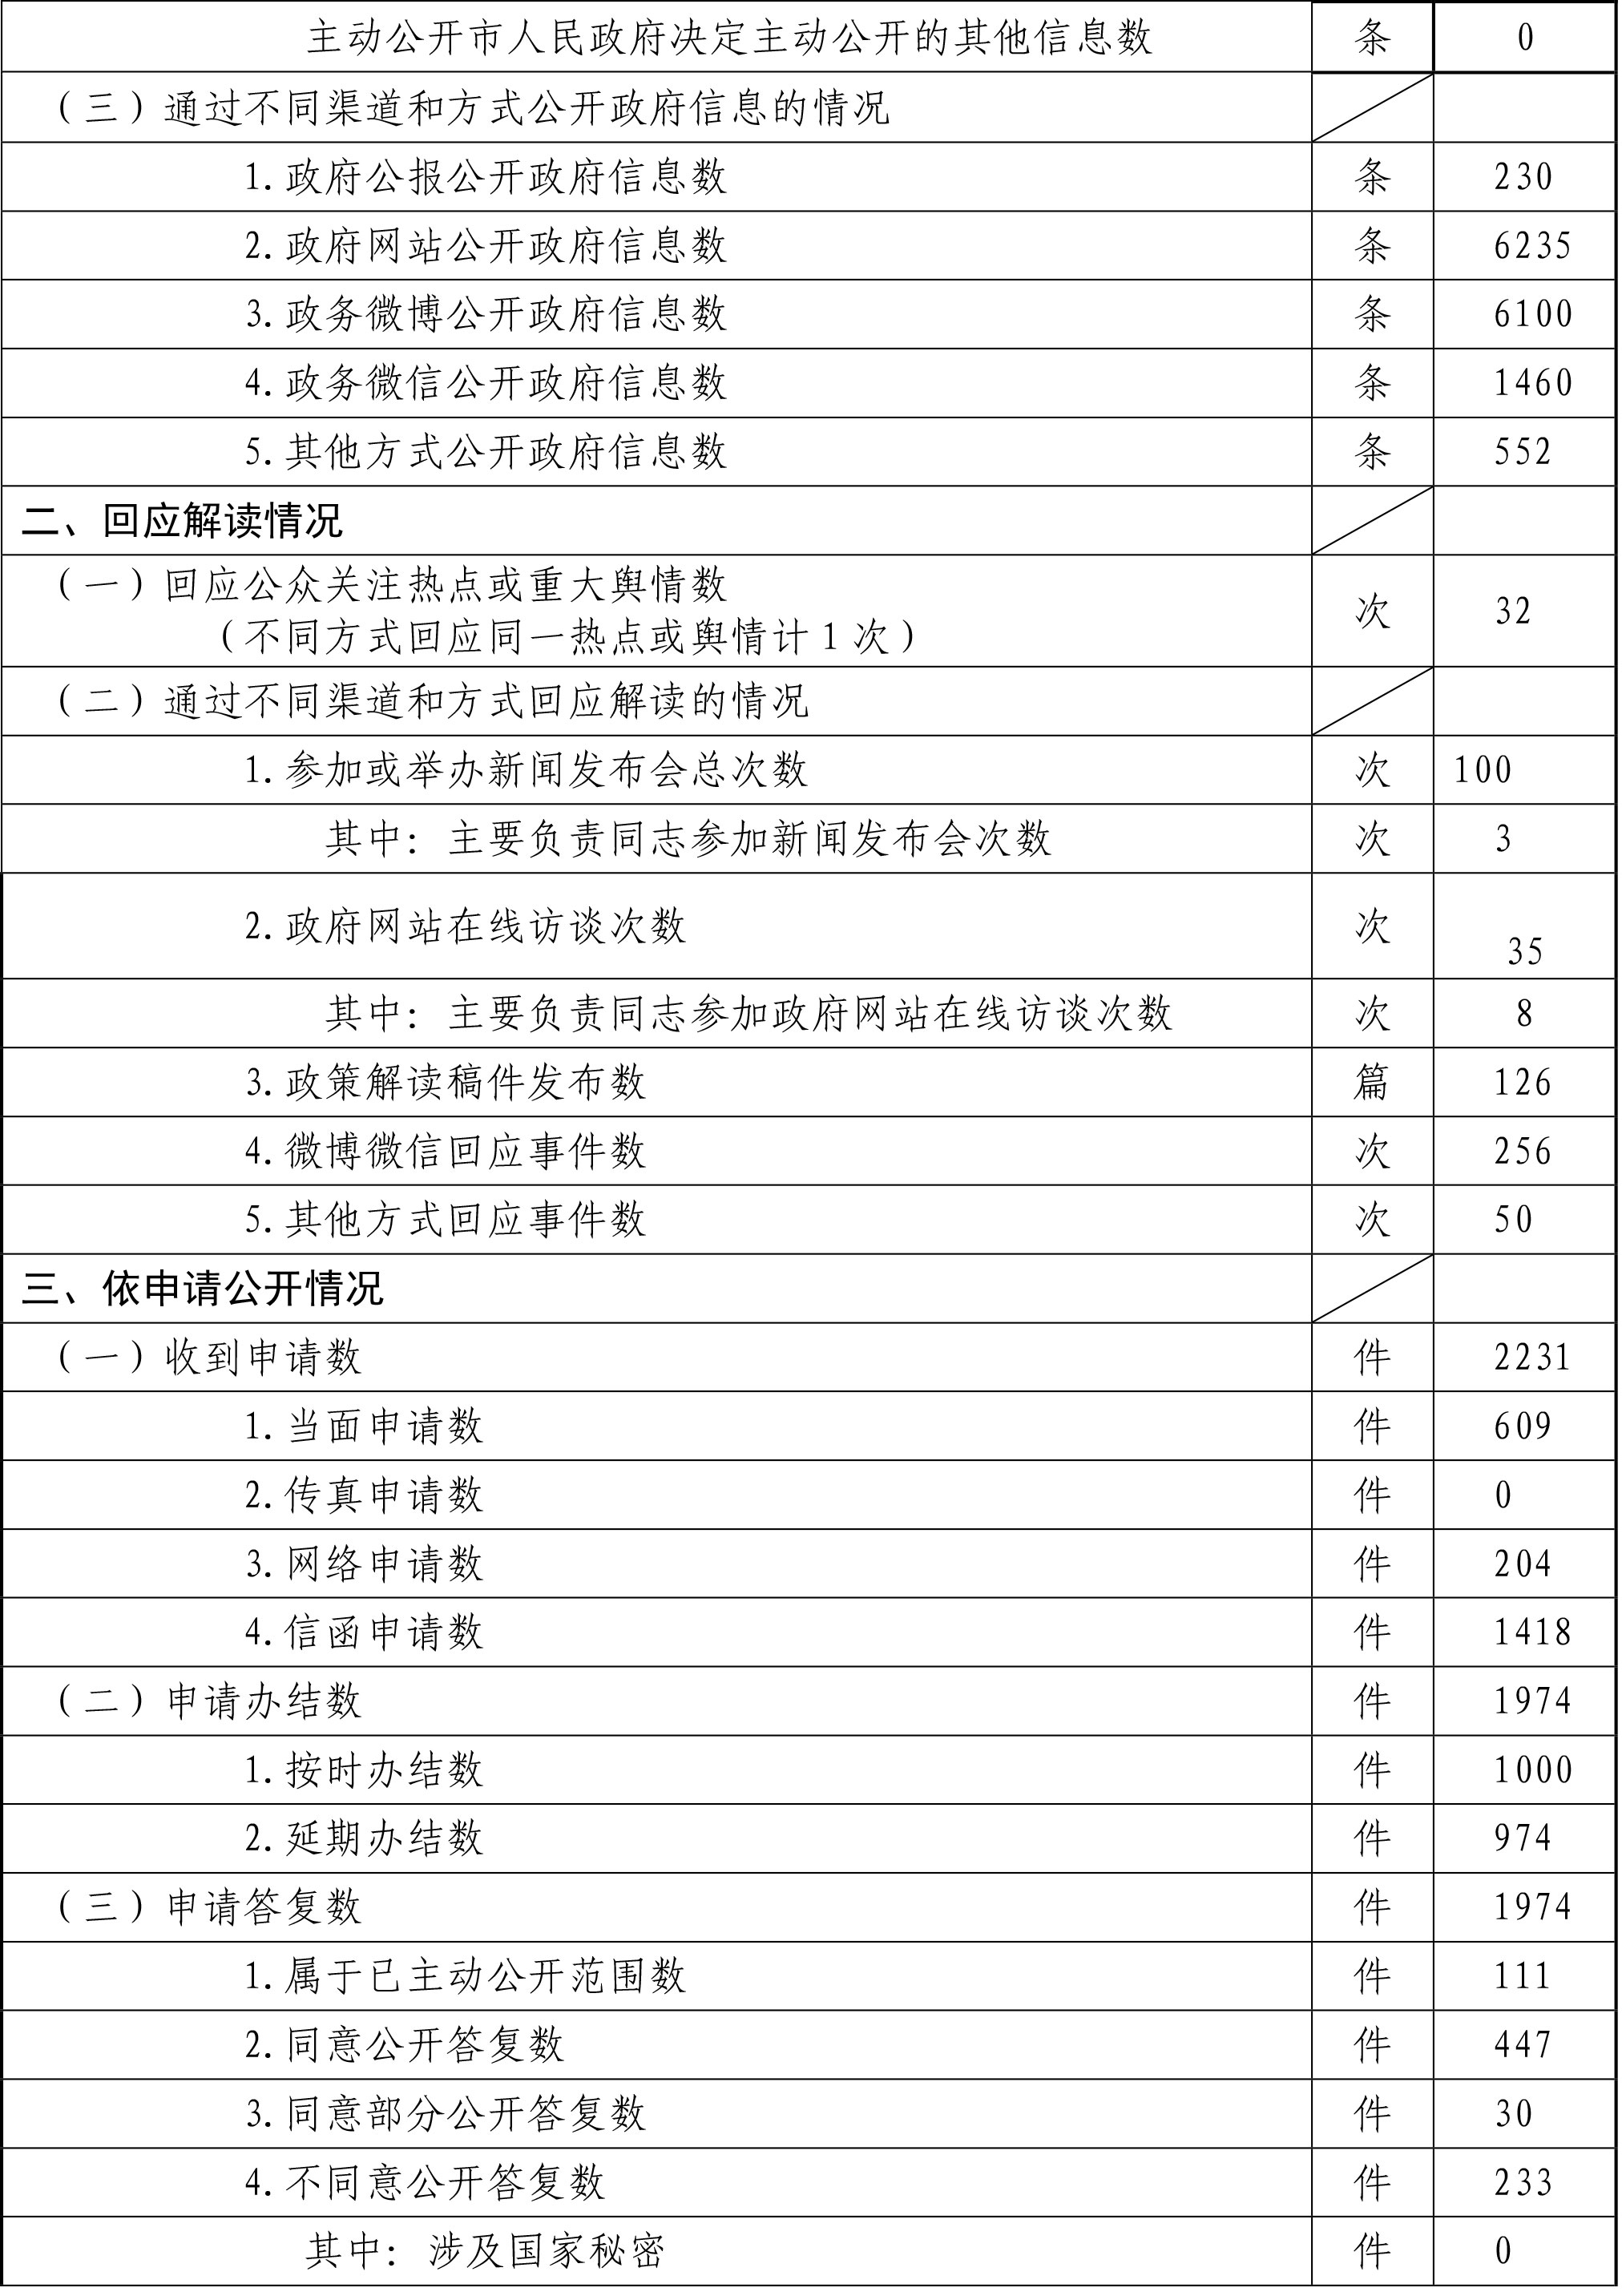 北京市海淀区人民政府政府信息公开情况统计表(2017年度)